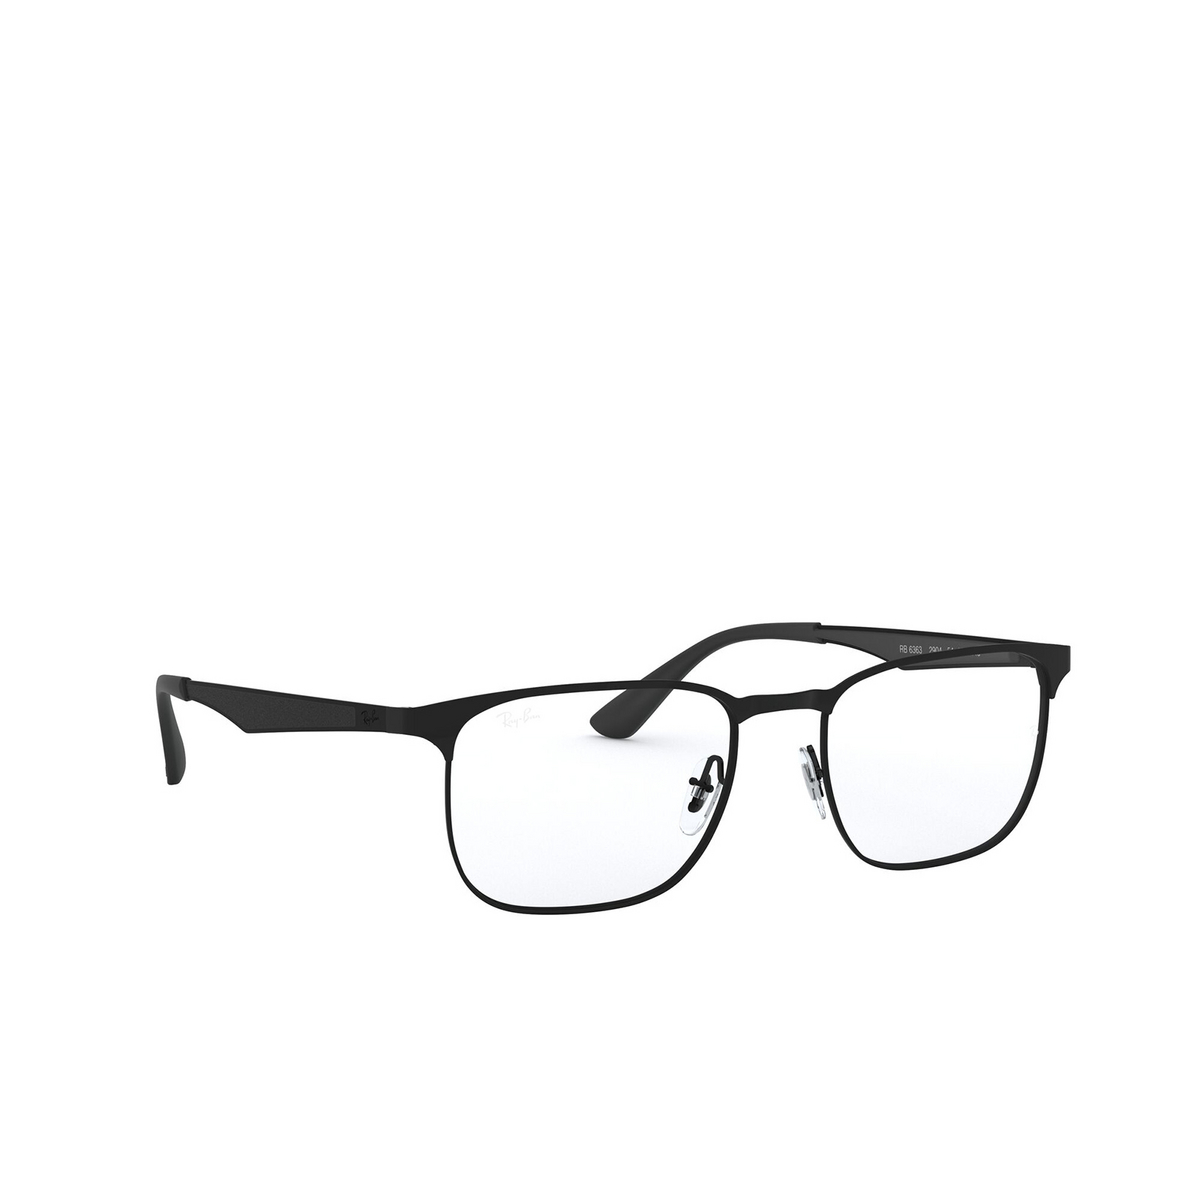 Ray-Ban® Square Eyeglasses: RX6363 color Matte Black On Black 2904 - three-quarters view.